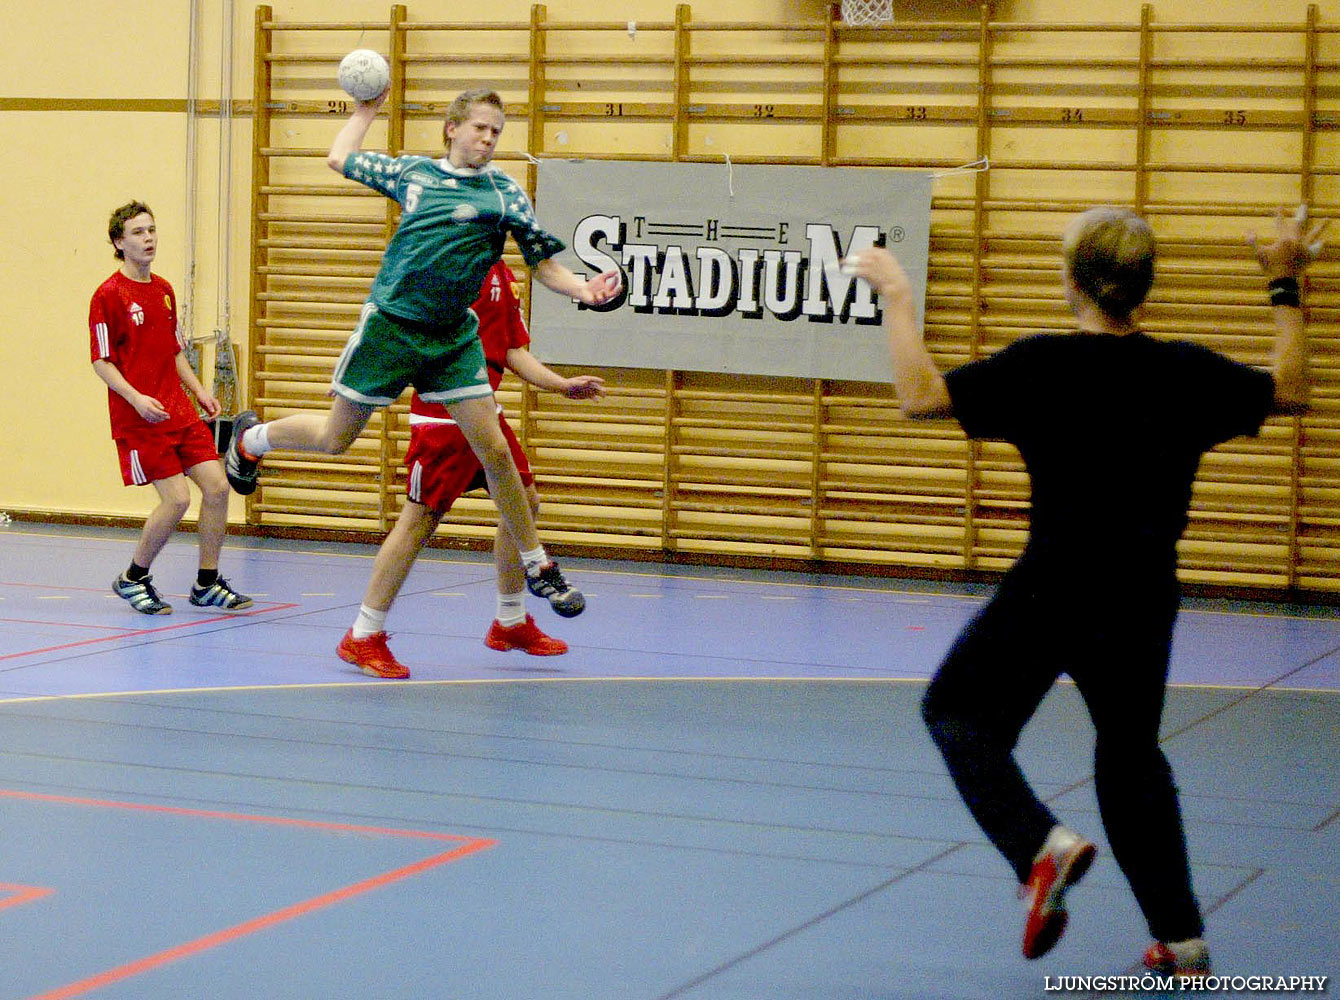 Skadevi Handbollscup 2005 Fredag,mix,Arena Skövde,Skövde,Sverige,Handboll,,2005,141321